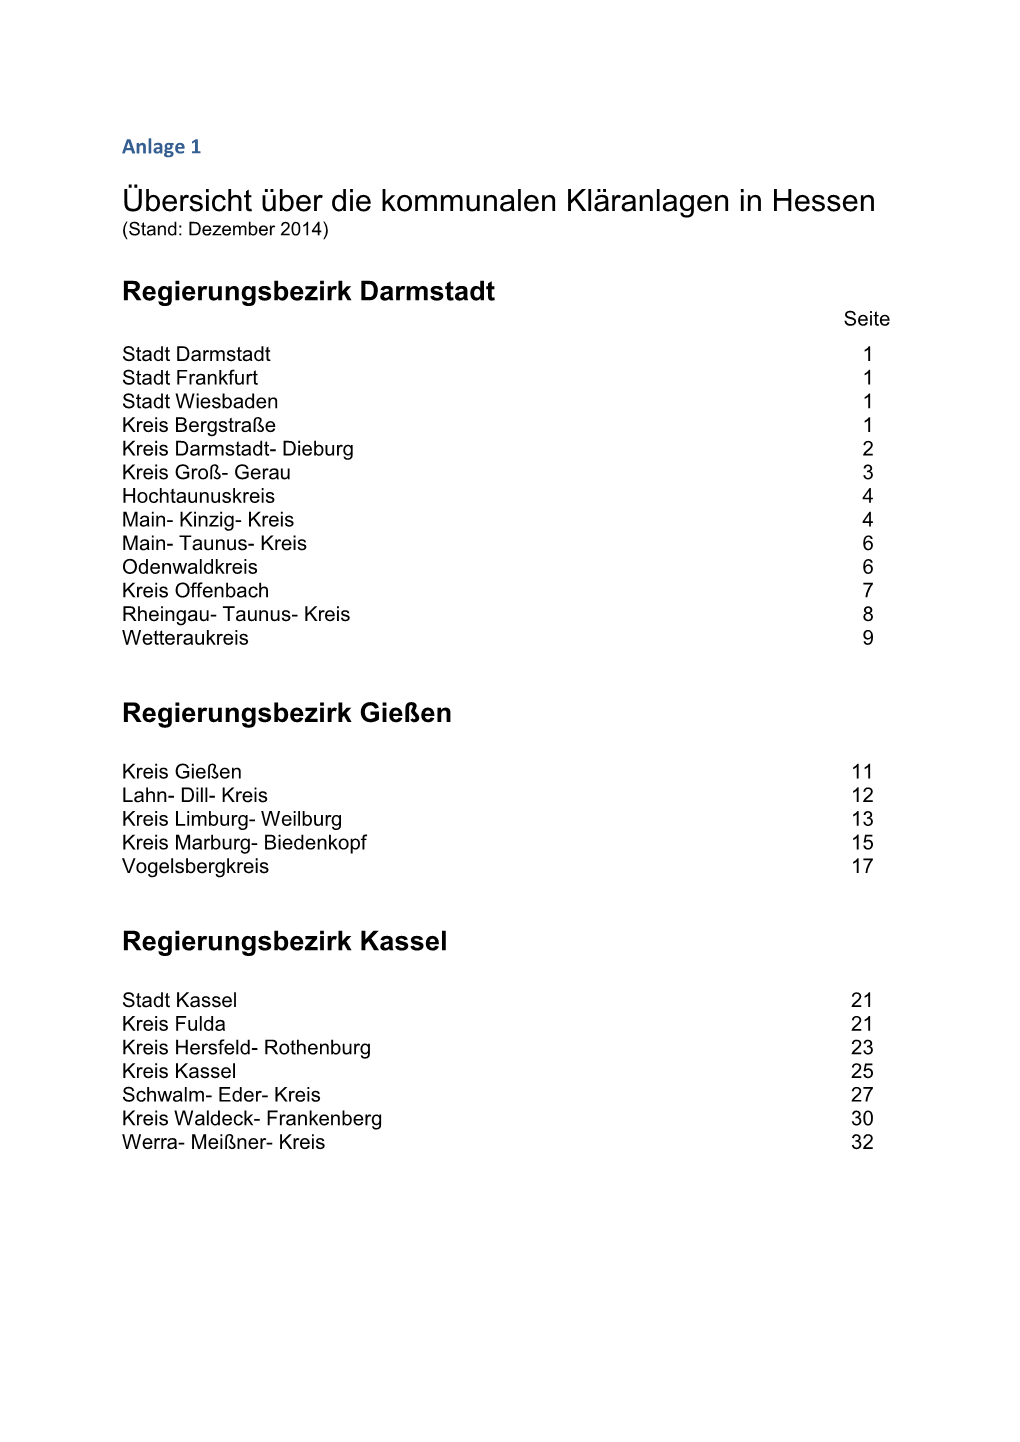 Übersicht Über Die Kommunalen Kläranlagen in Hessen (Stand: Dezember 2014)